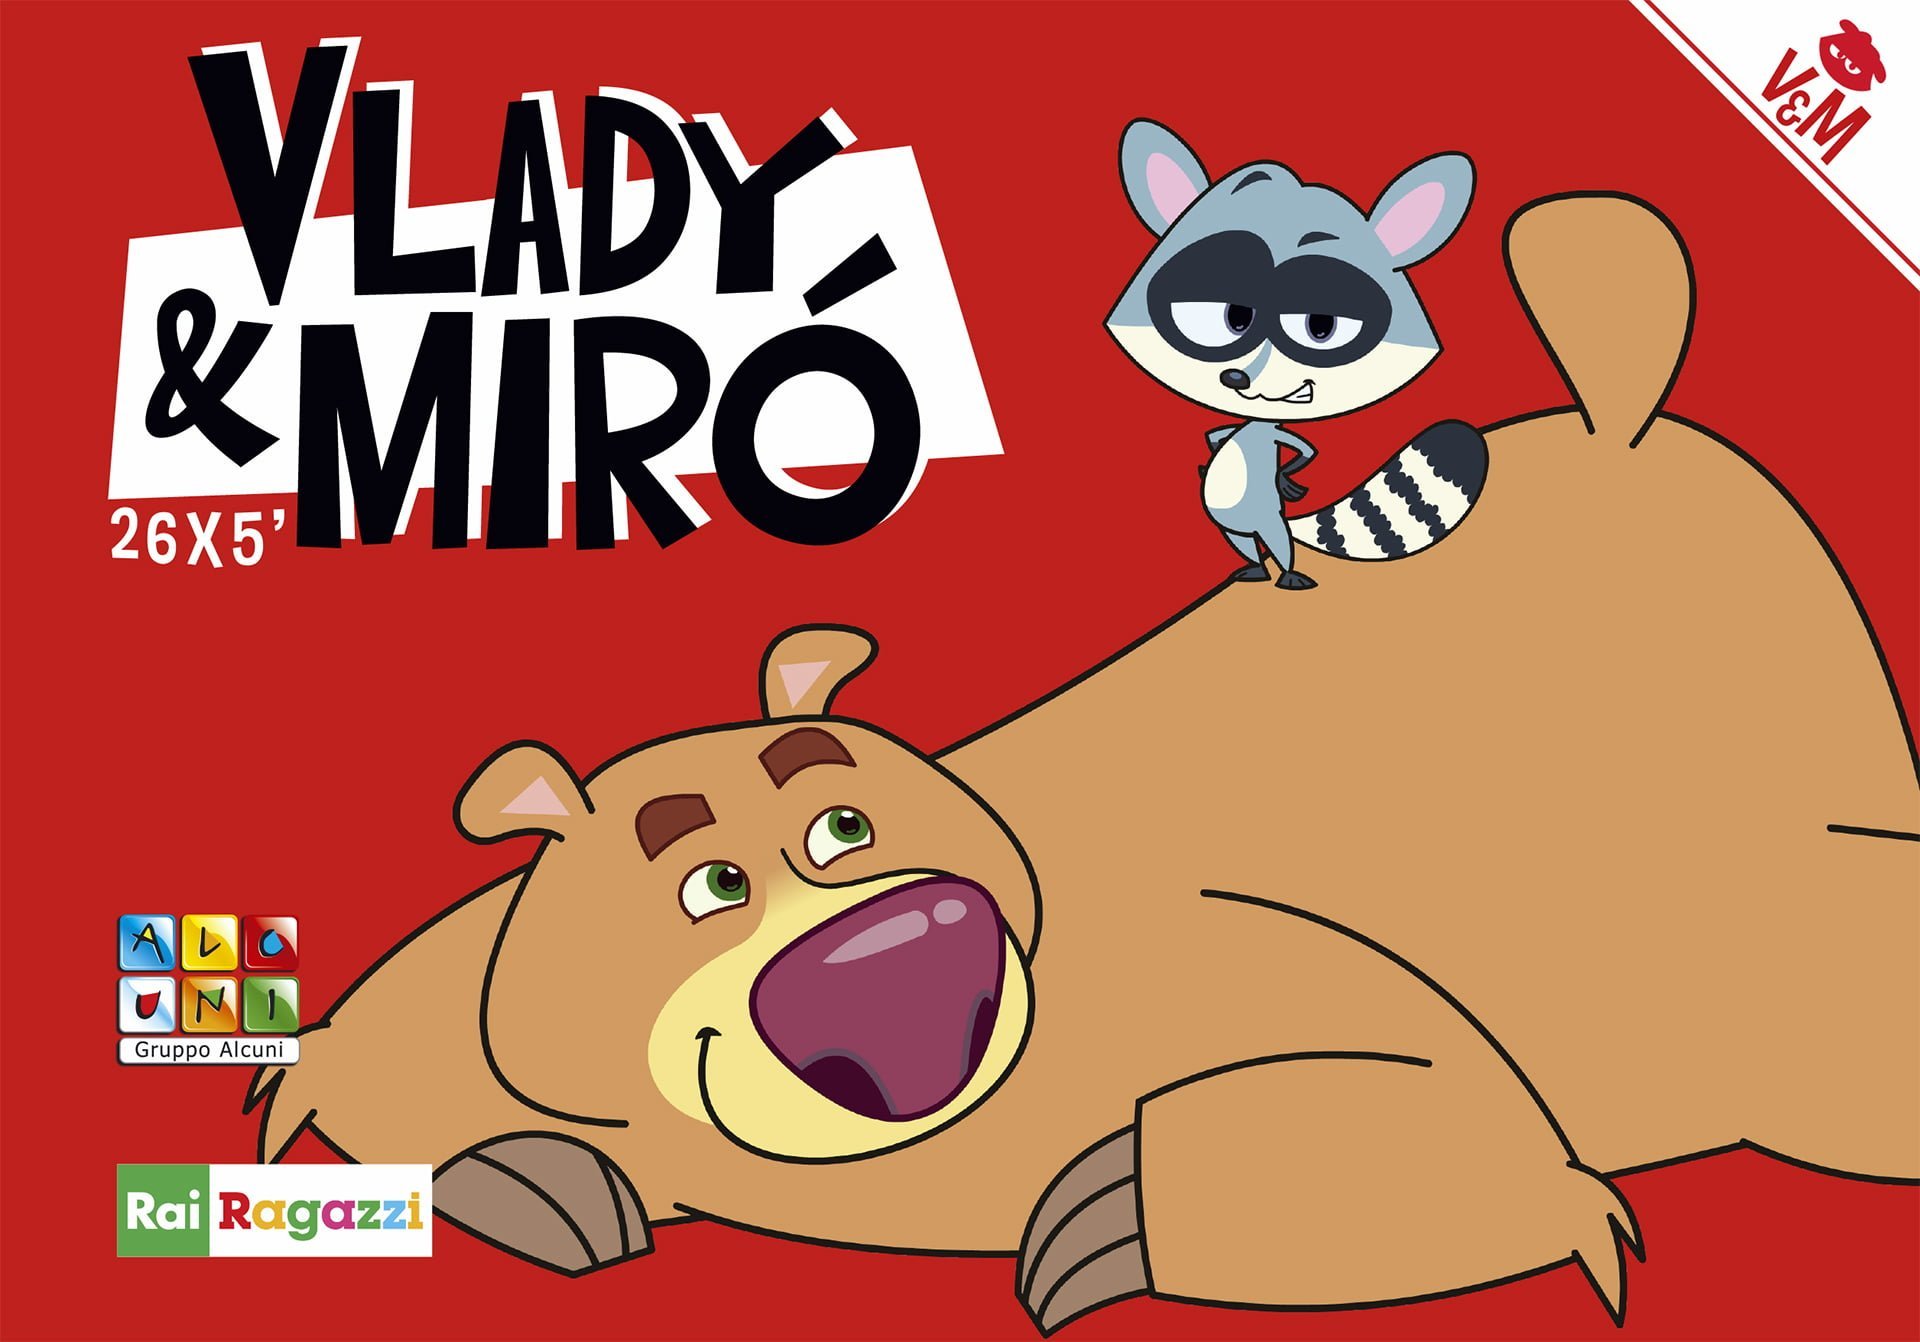 La serie animata “Vlady & Miró”, con la regia di Sergio Manfio, sarà disponibile dal 14 gennaio in esclusiva su RaiPlay e dal 31 gennaio su Rai YoYo tutti i giorni alle 15.20.